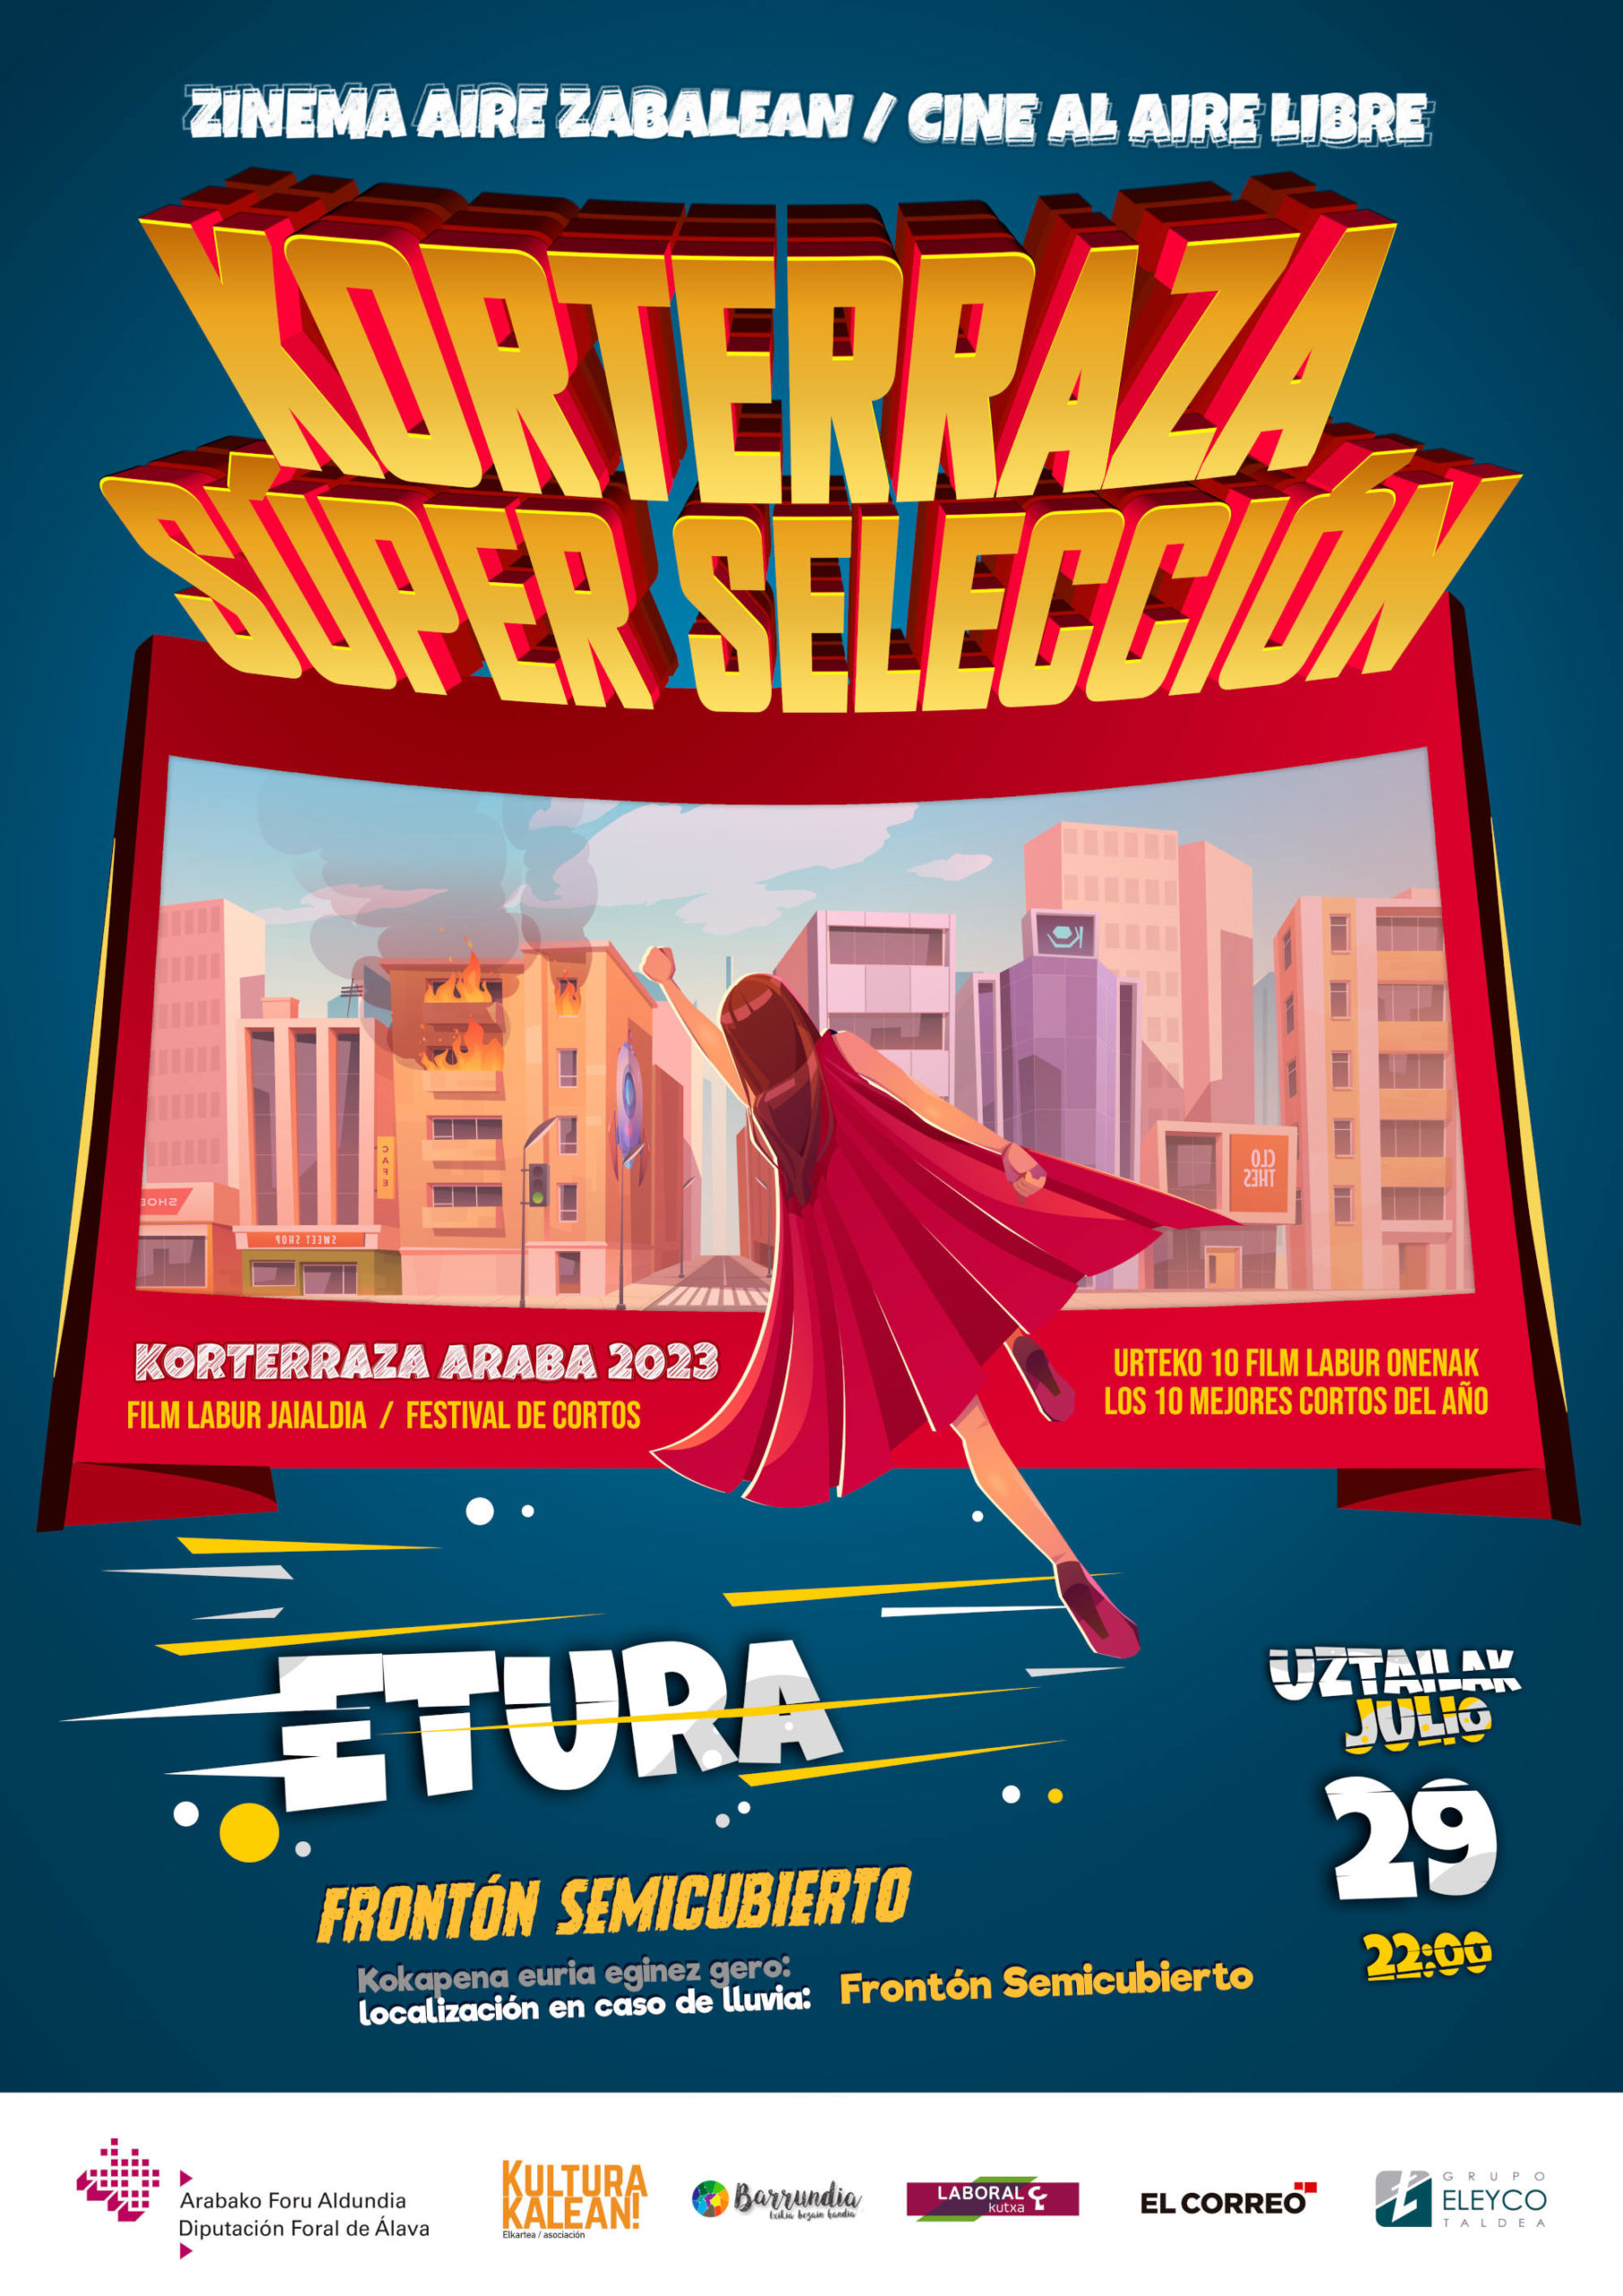 Korterraza Etura, festival de cortos - Super Seleccion